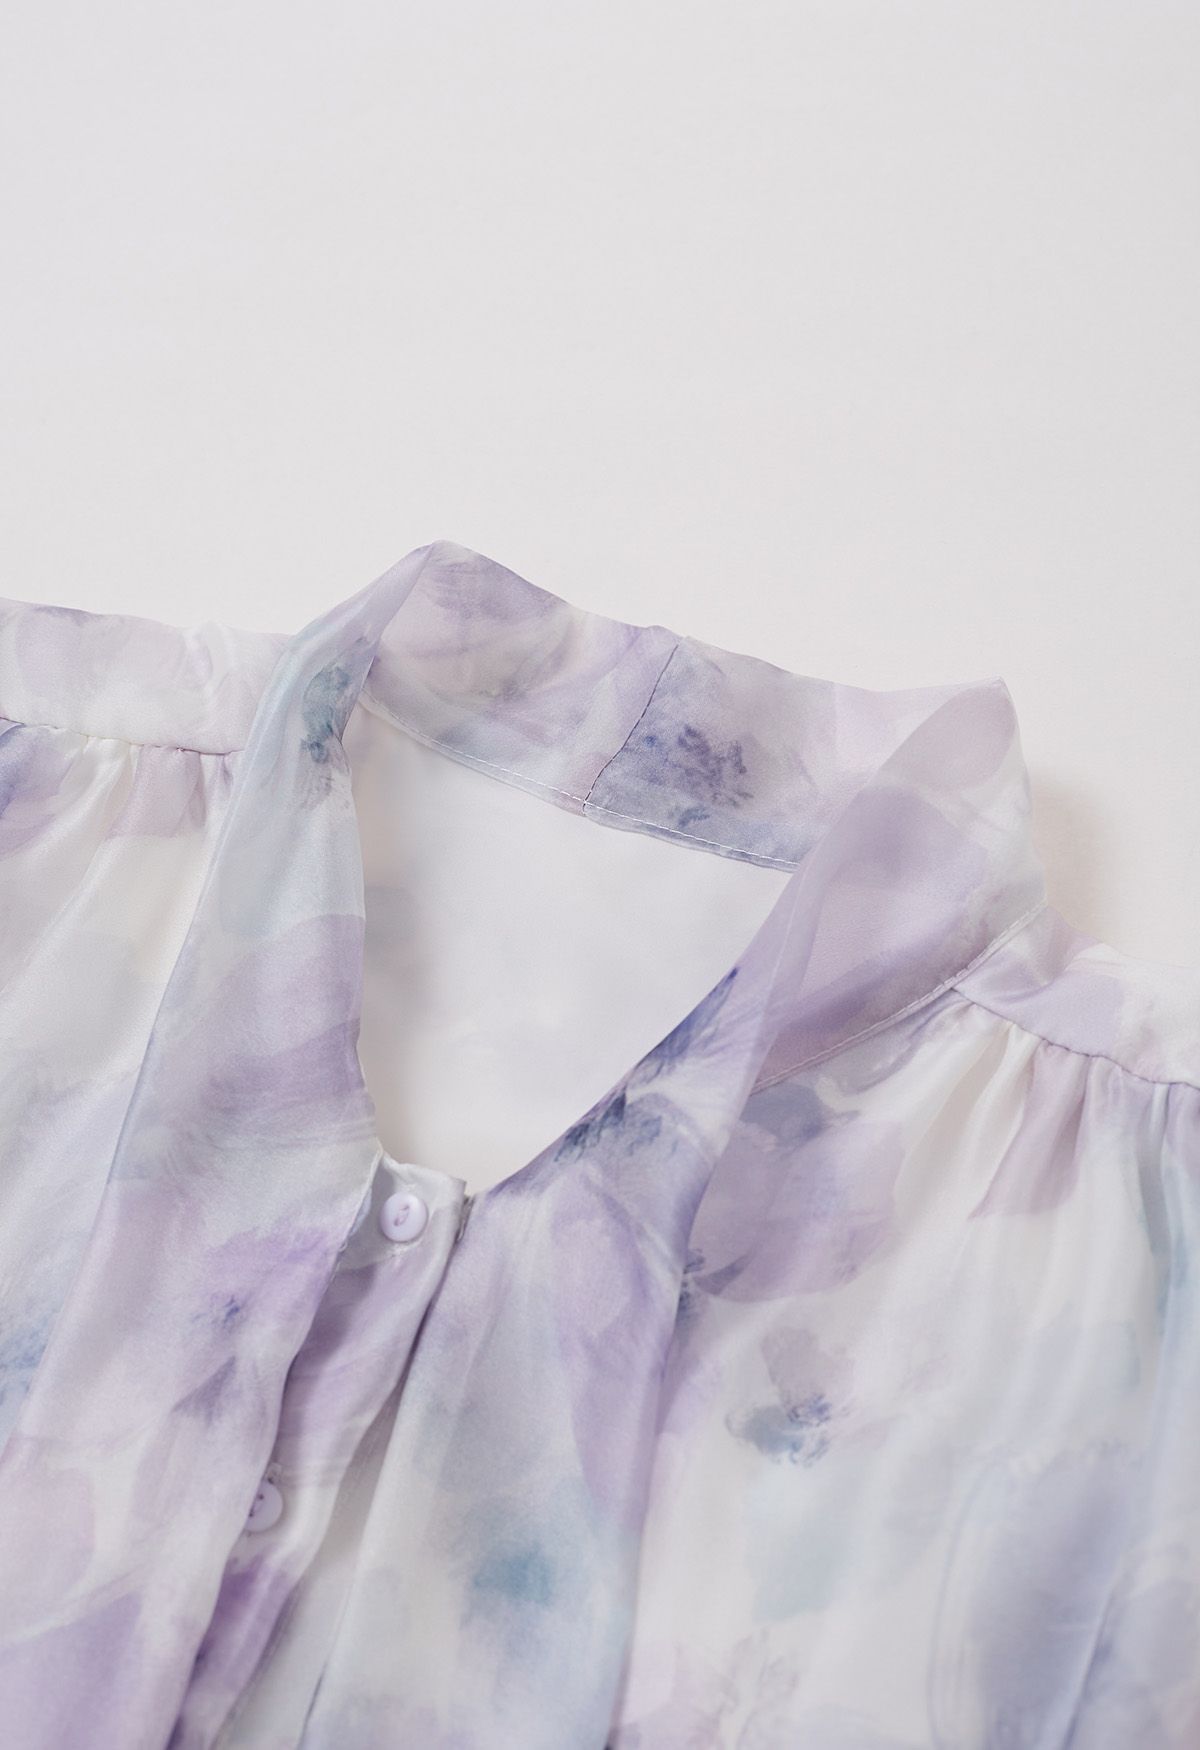 Transparentes Hemd mit Schleife und Aquarellblumenmuster in Flieder